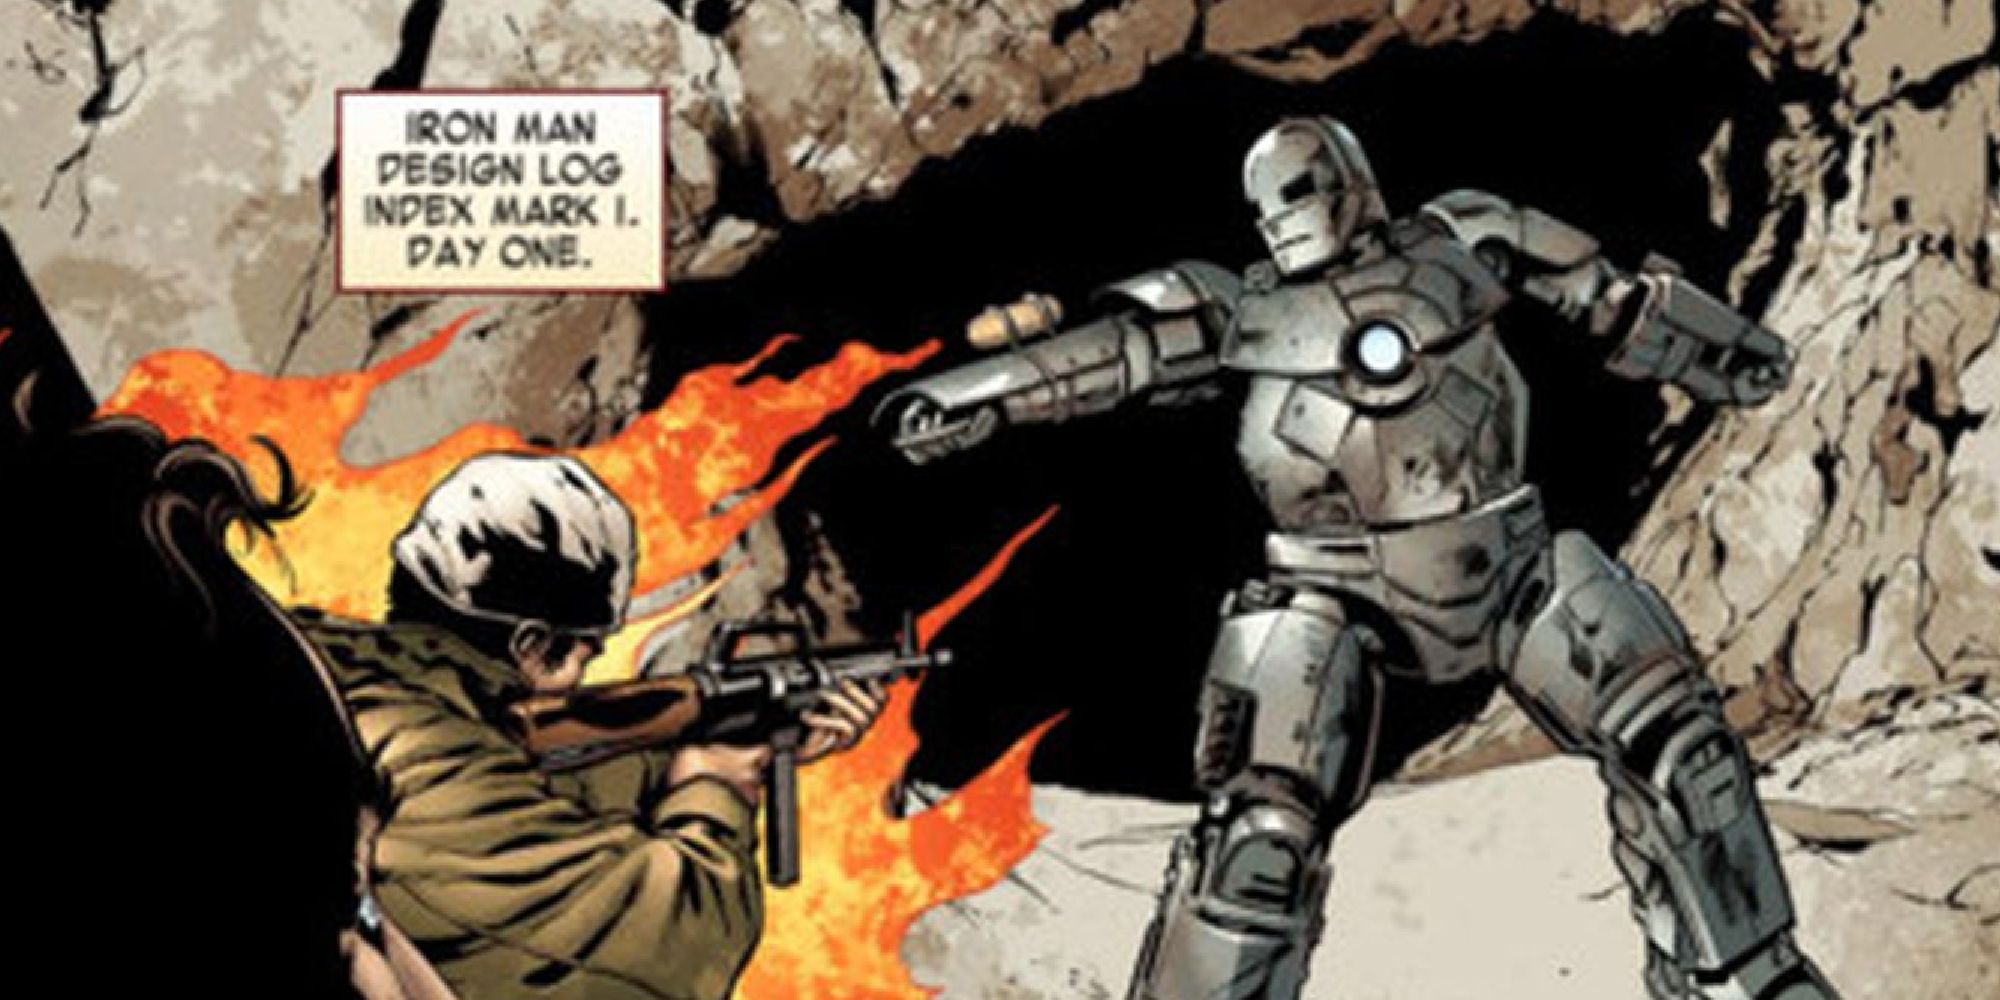 Тони Старк в оригинальном костюме Железного человека Mark I стреляет из огнемета в террористов